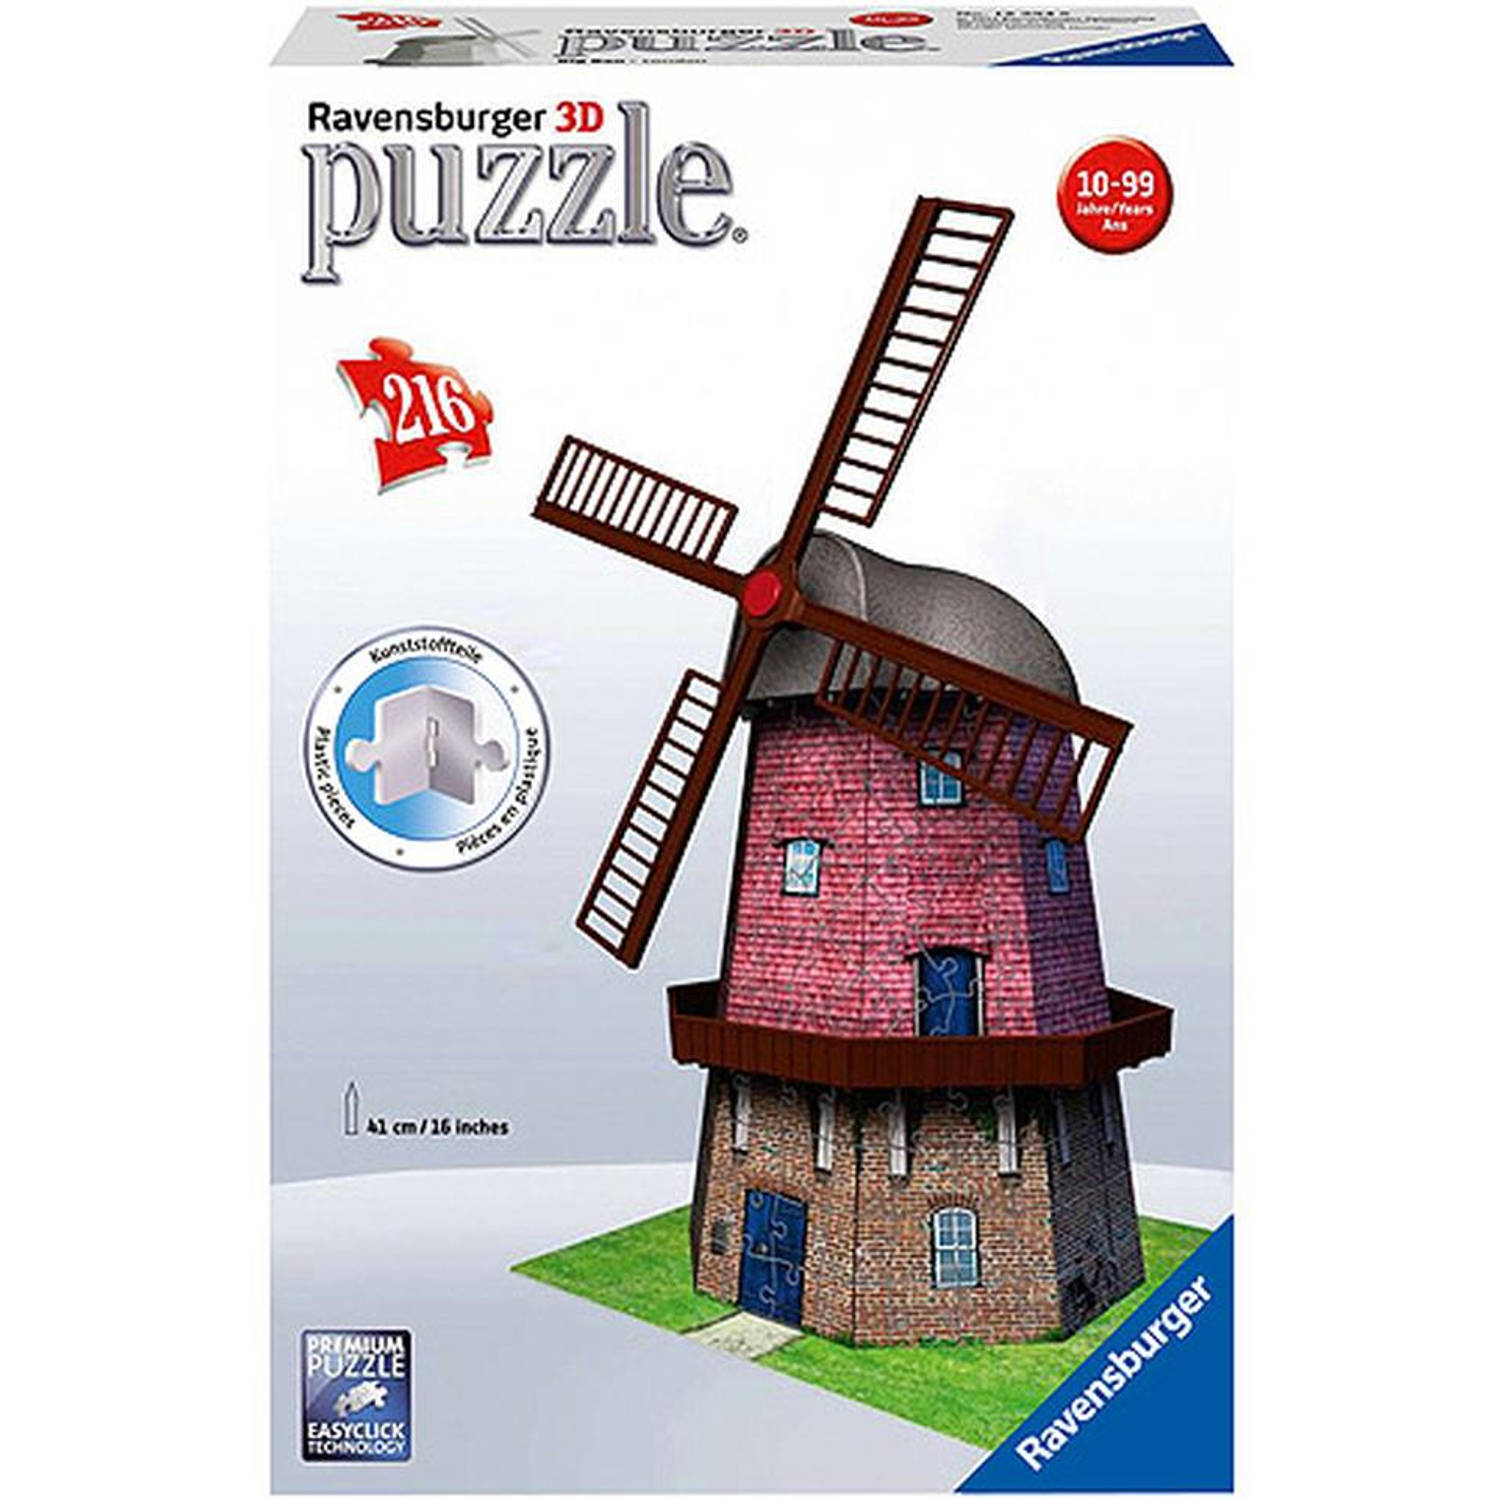 Ravensburger 3D puzzel windmolen 216 stukjes | Blokker